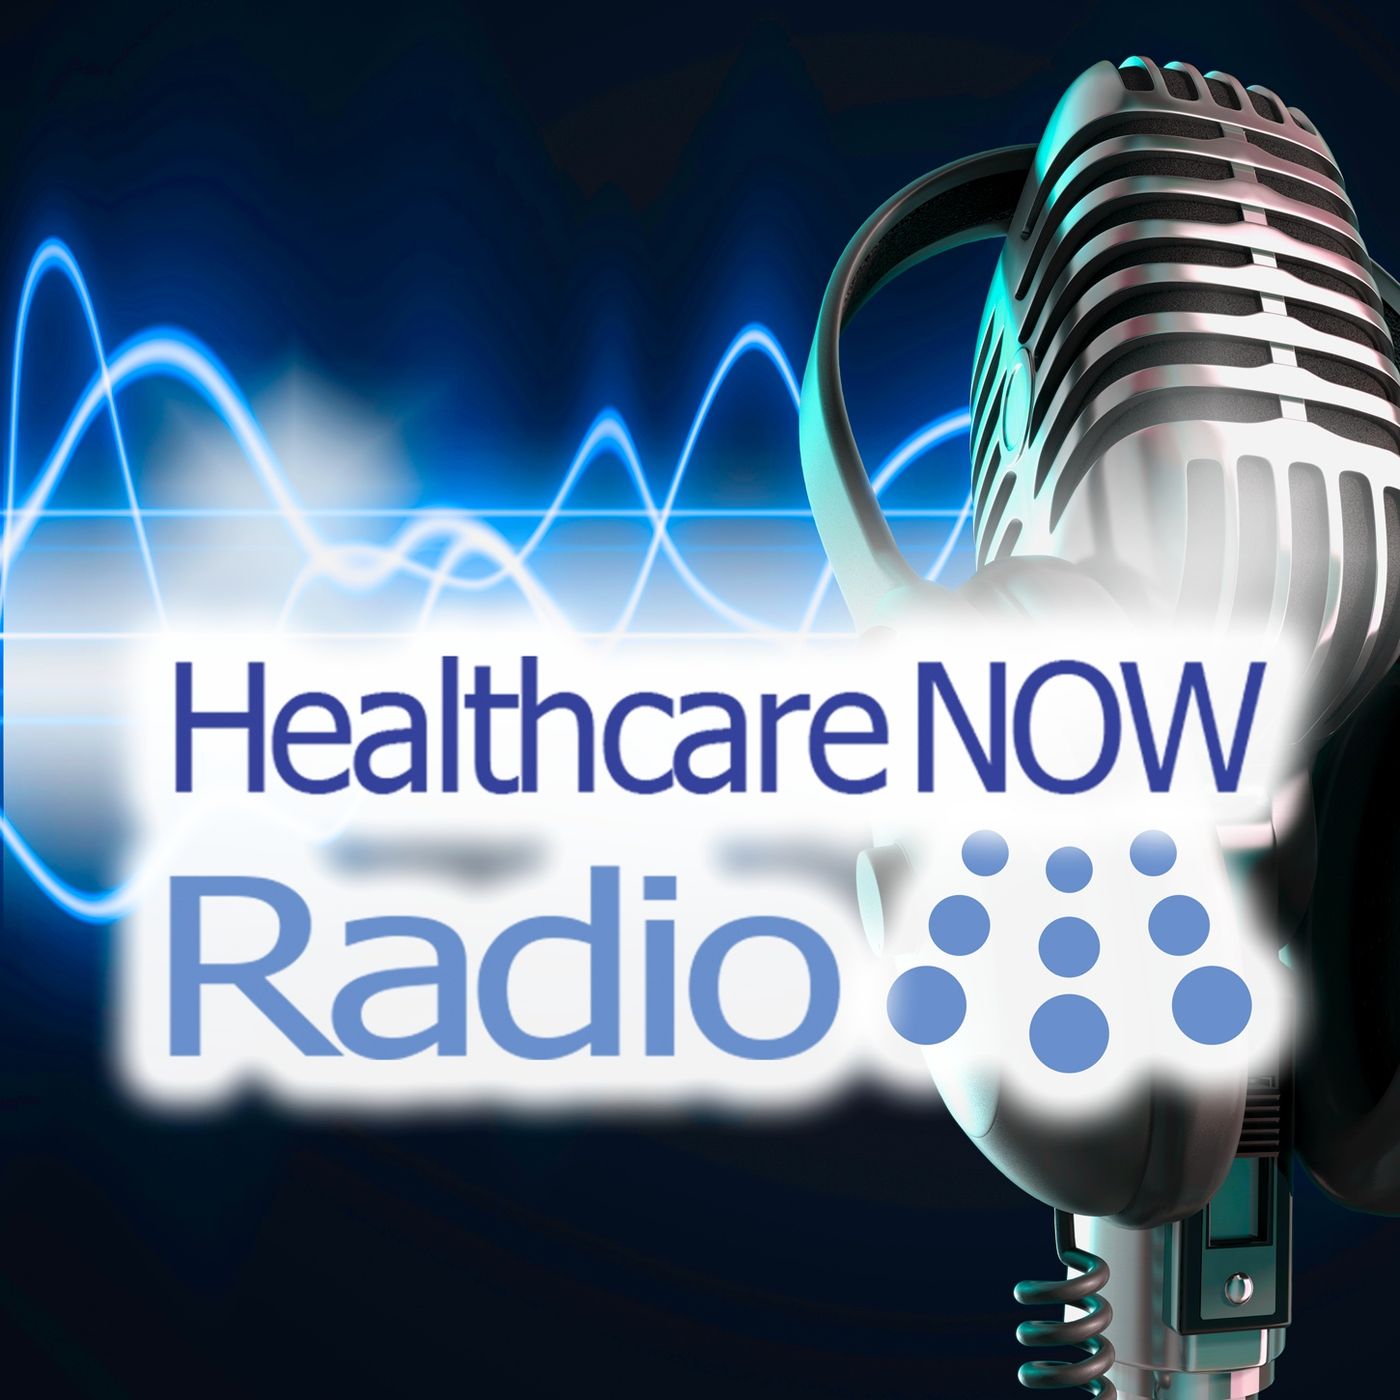 Healthcare NOW Radio